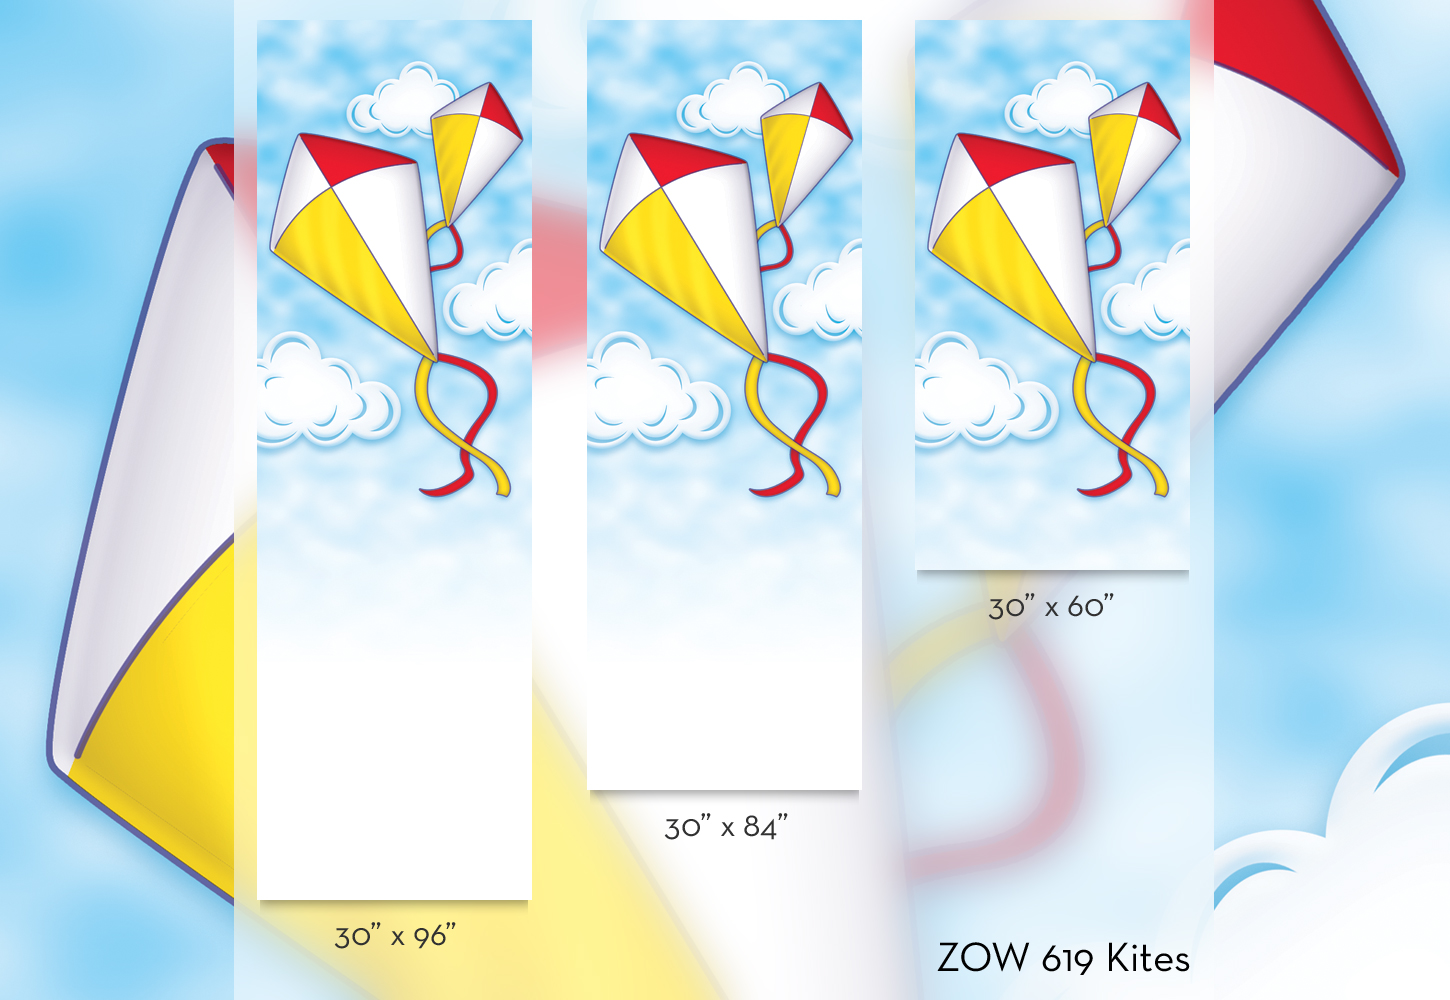 ZOW 619 Kites